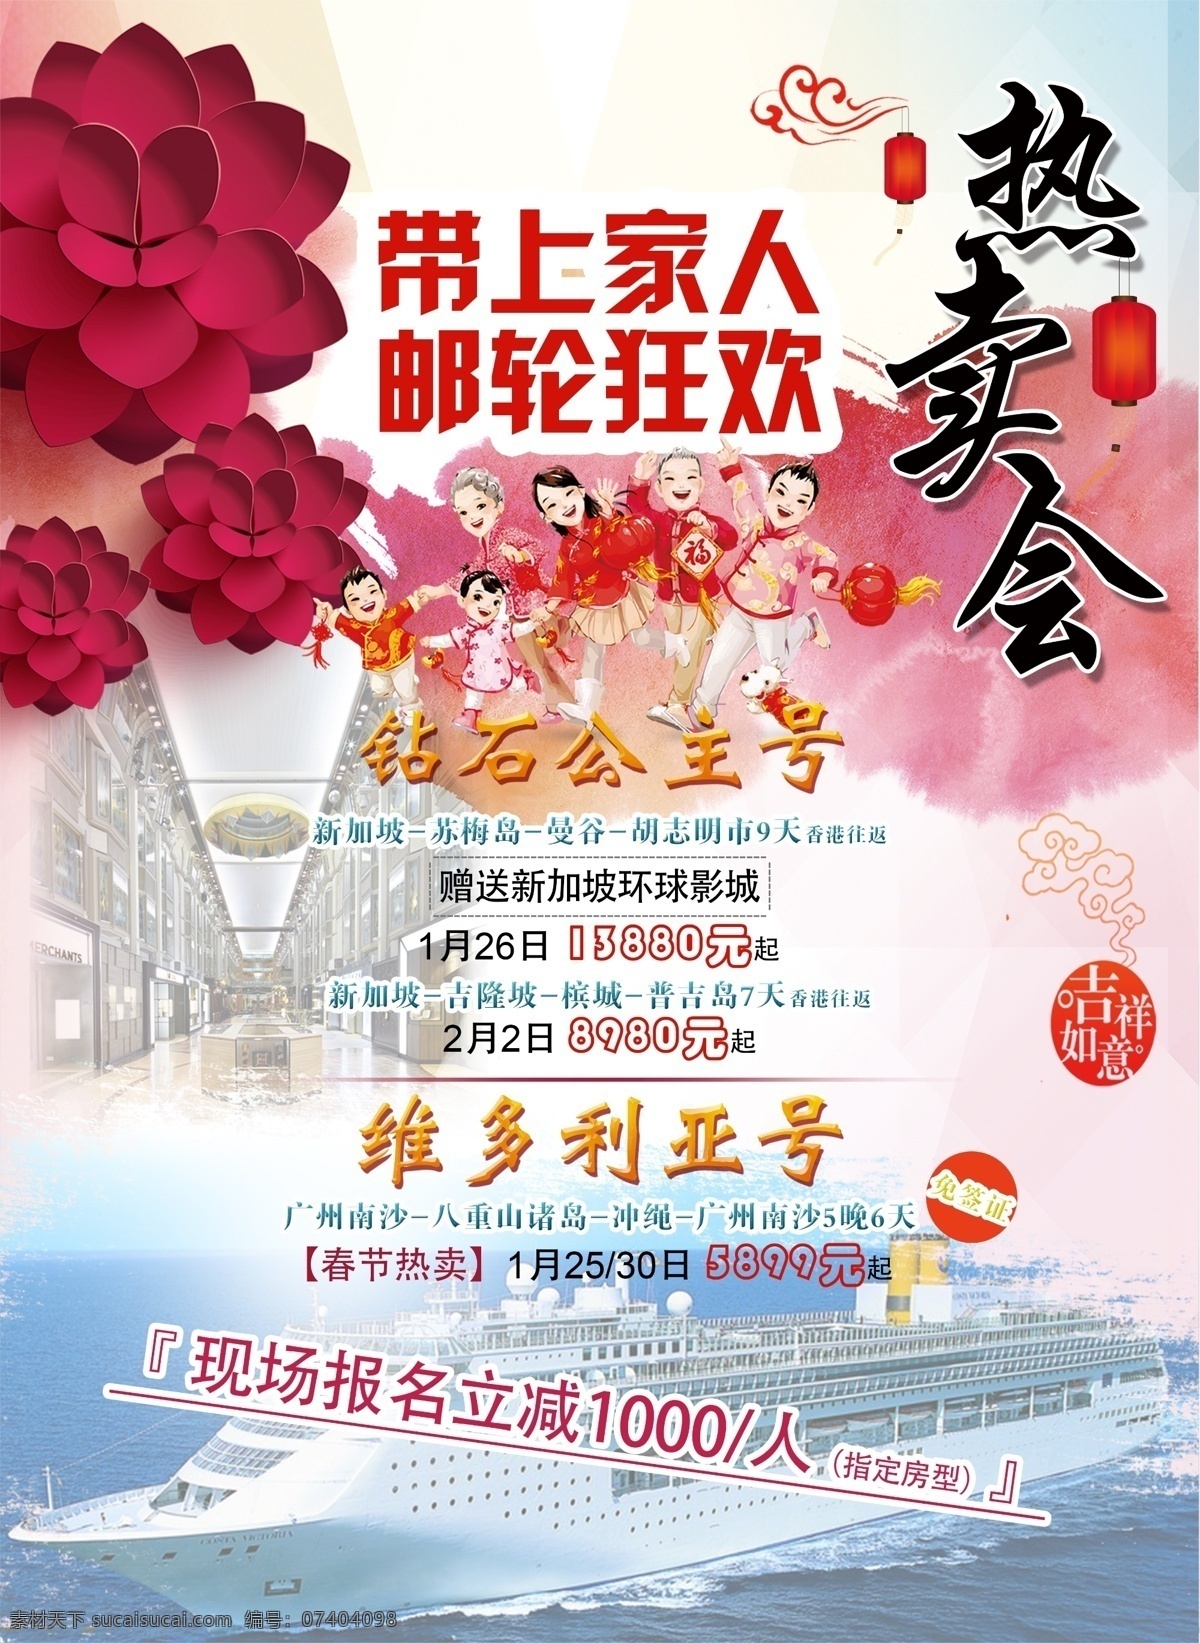 邮轮春节海报 春节 邮轮 游轮 旅游 宣传单张 钻石公主号 维多利亚号 越南 日本